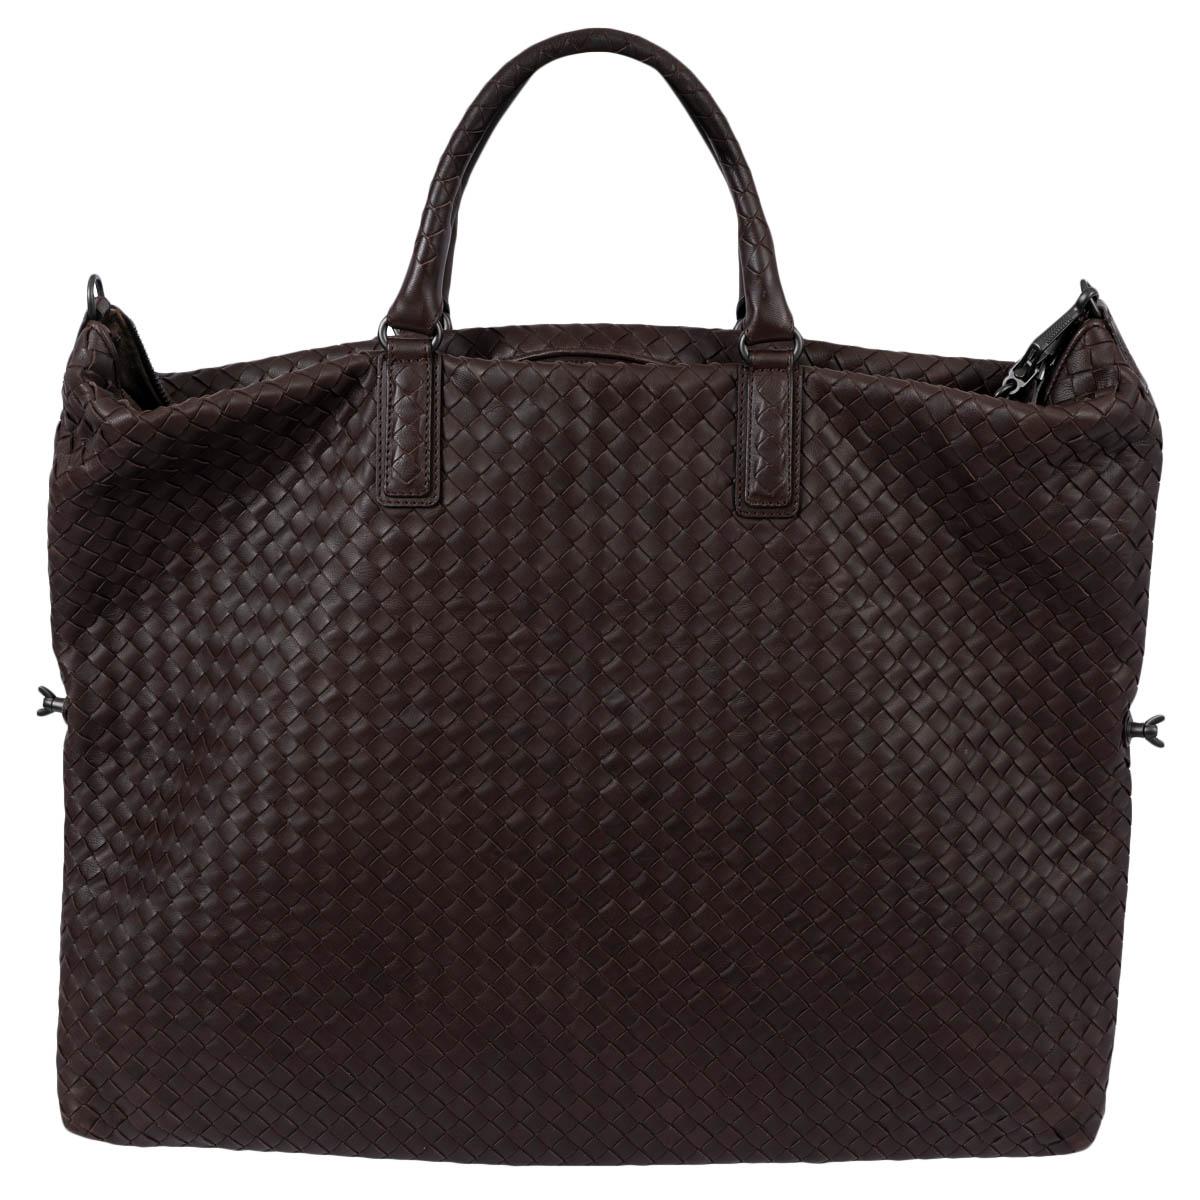 BOTTEGA VENETA Ebano brown leather INTRECCIATO MAXI CONVERTIBLE TOTE Bag For Sale 1